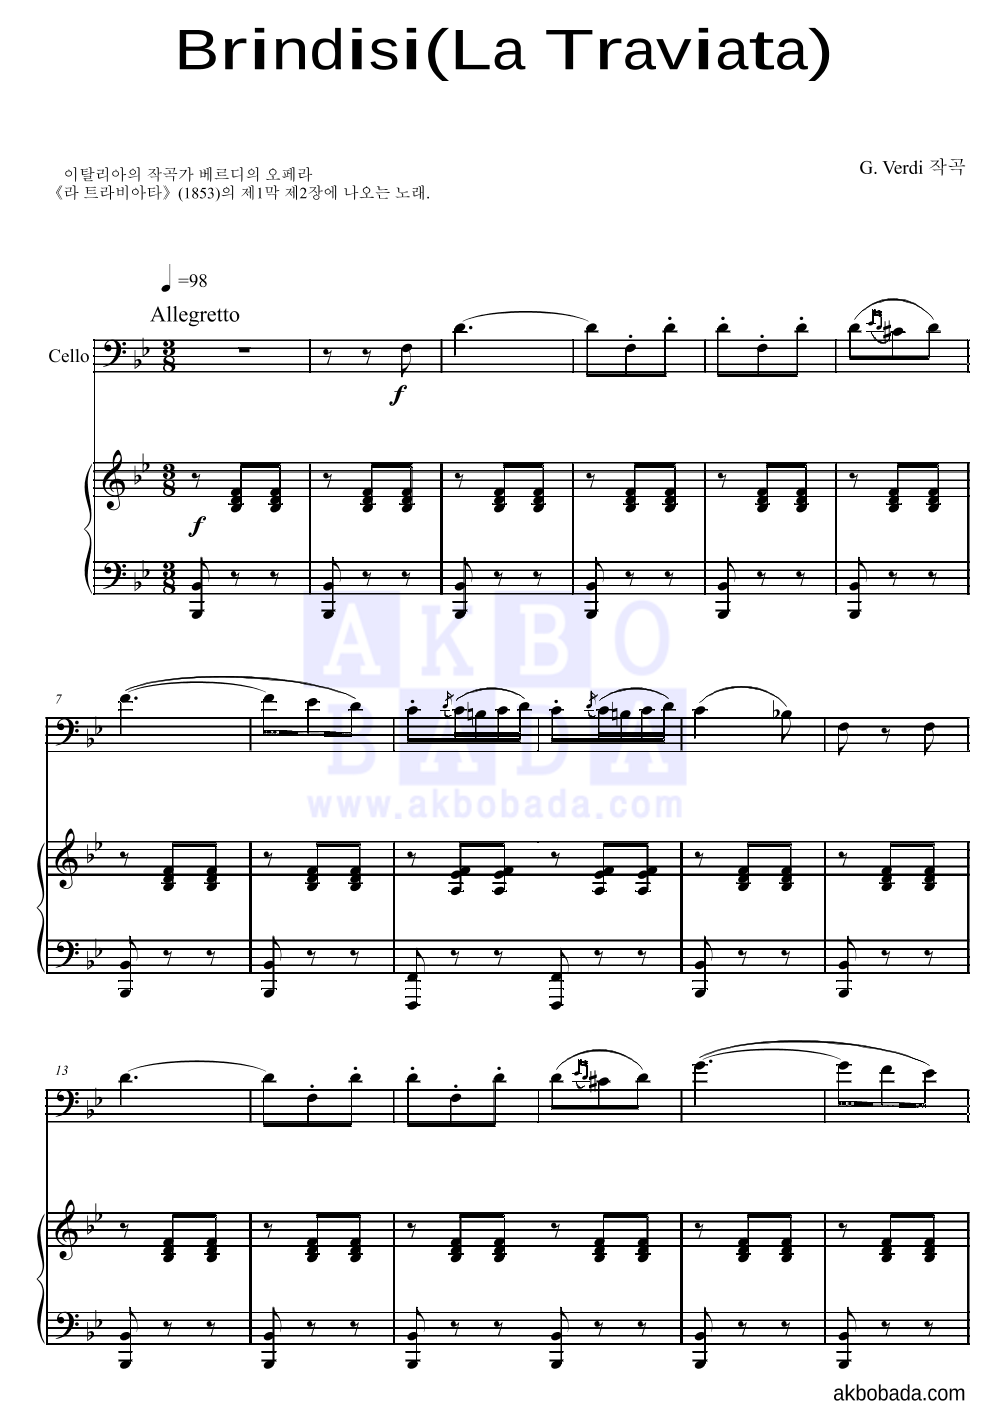 베르디 - Brindisi(La Traviata)축배의 노래 첼로&피아노 악보 